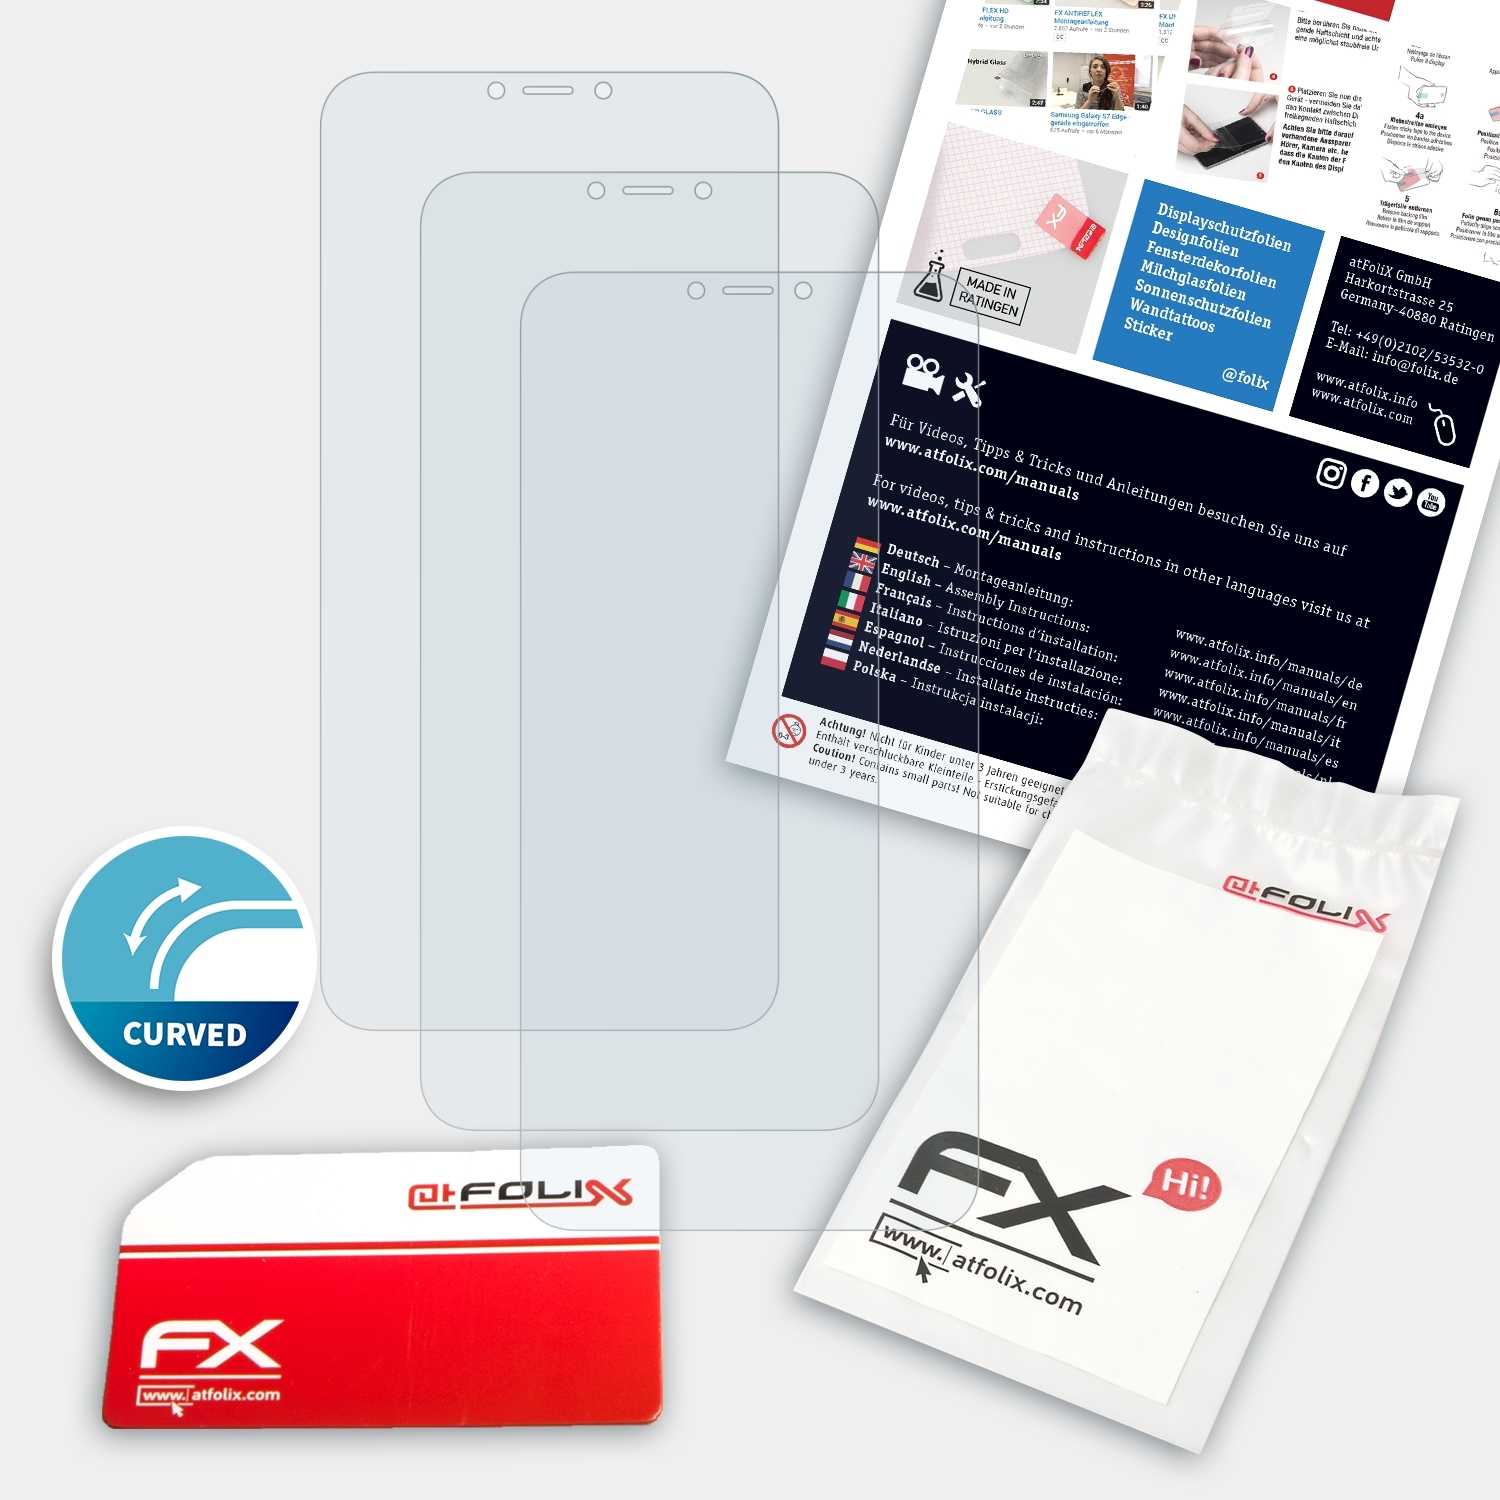 ATFOLIX 3x FX-ActiFleX Displayschutz(für Asus (ZS620KL)) 5Z ZenFone